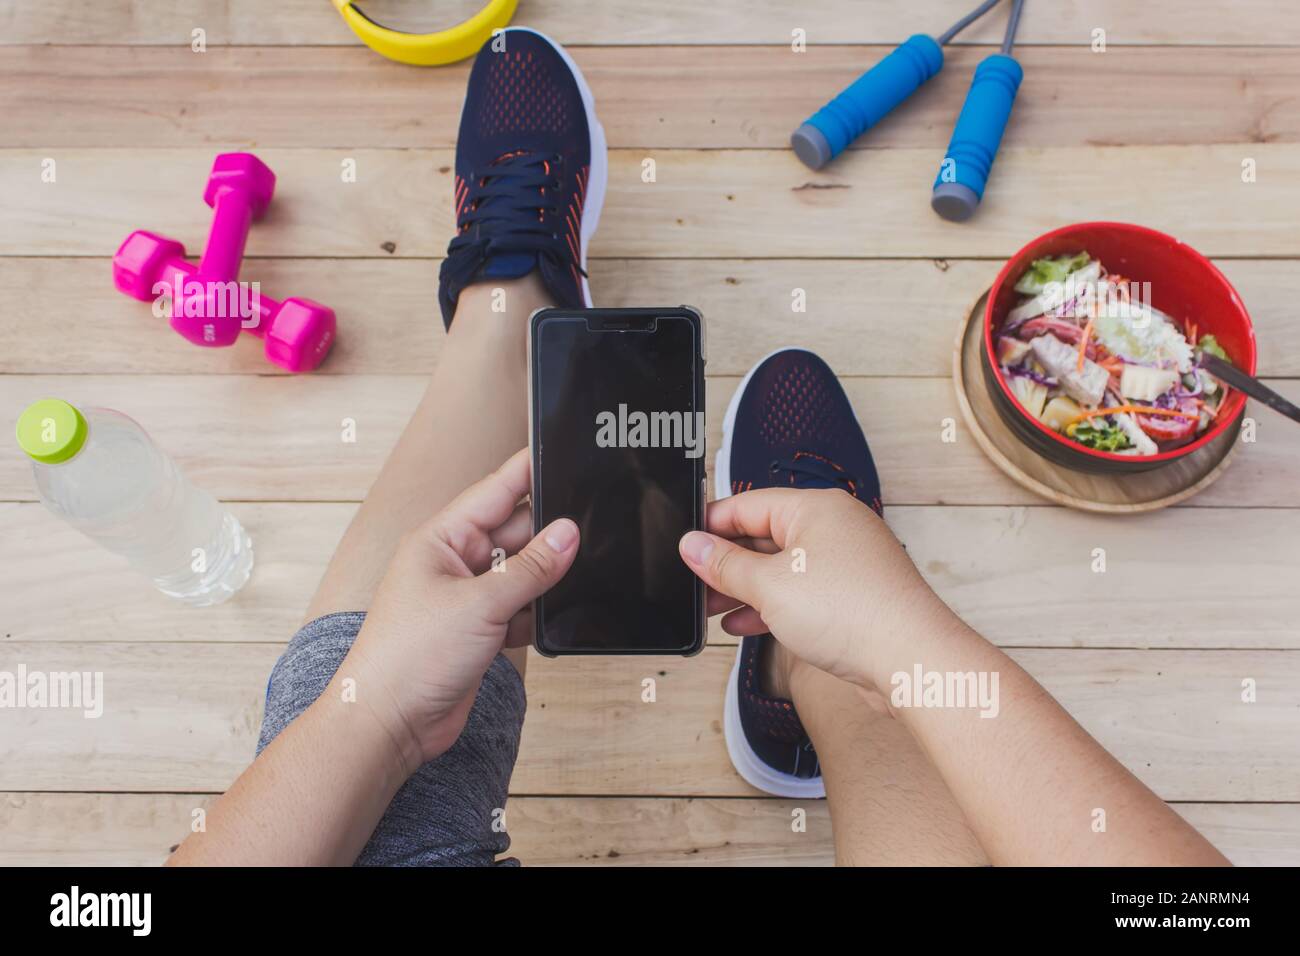 La ragazza possiede un telefono cellulare con attrezzature per esercizi, un pavimento in legno. Foto Stock